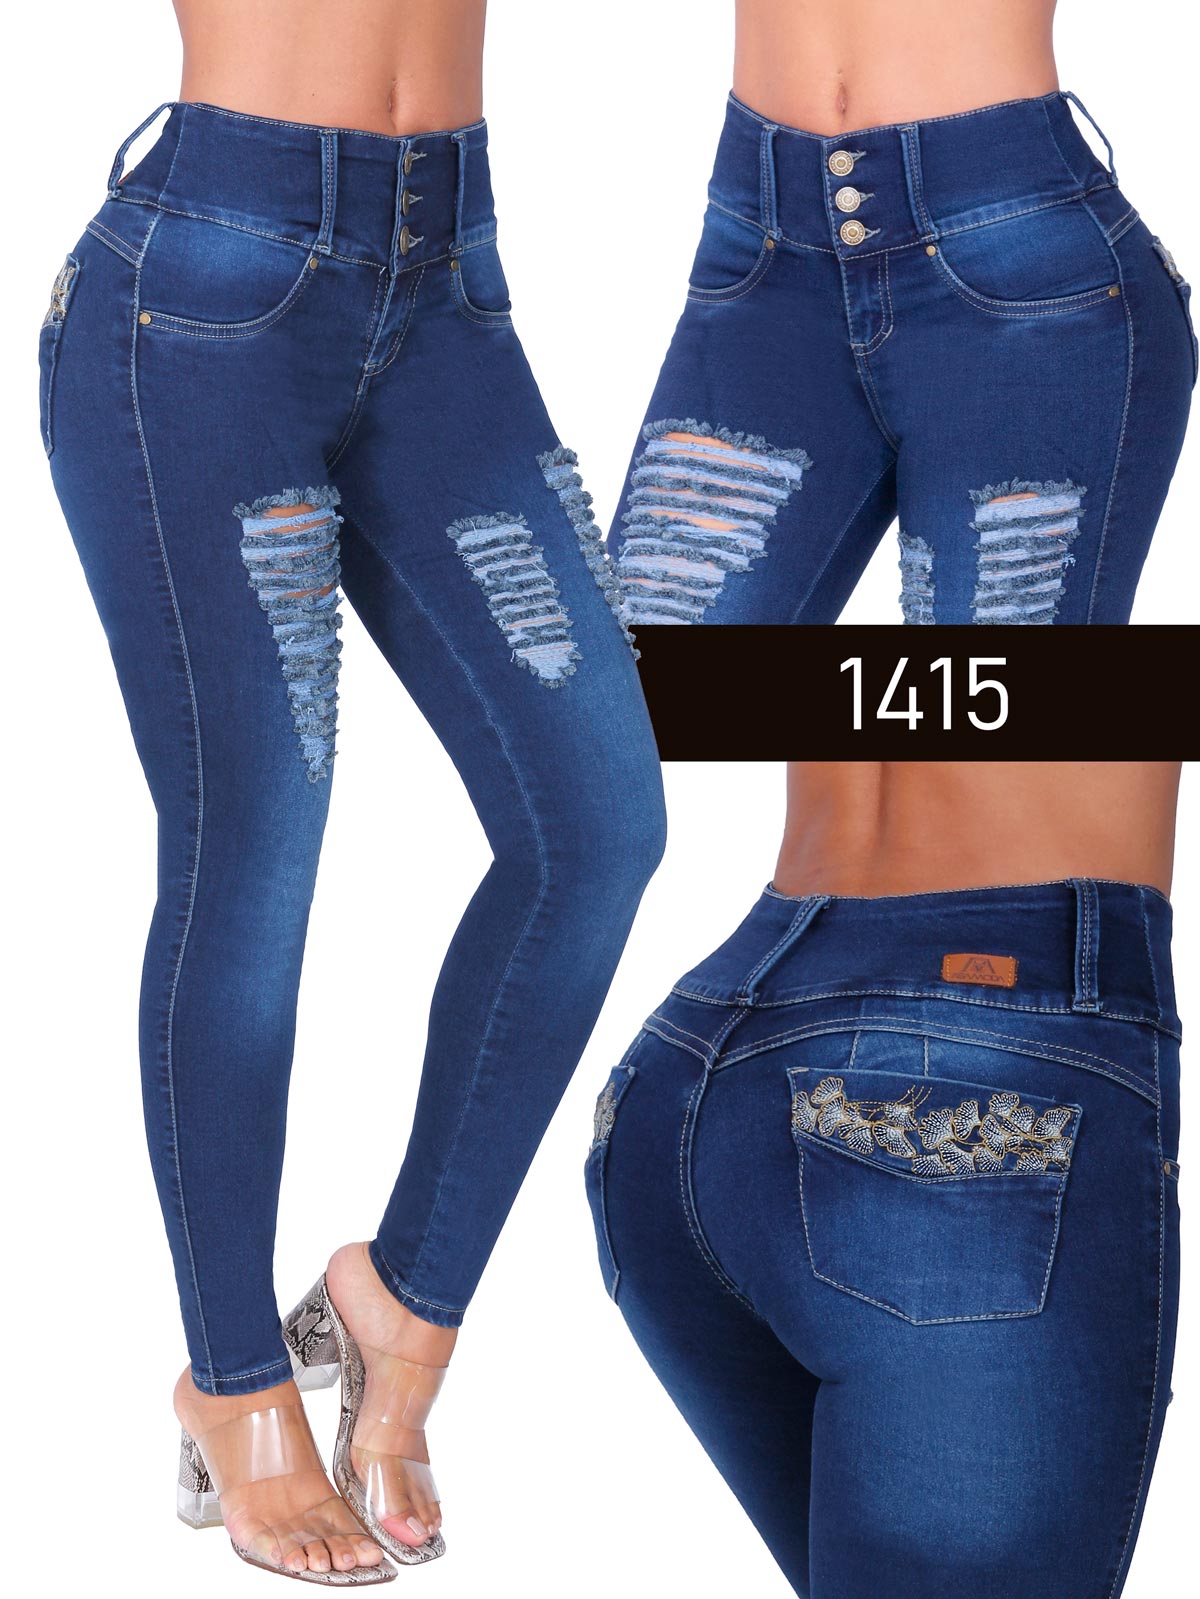 ASA Moda Colombian Buttlifting Jeans ASA1415 - Asamoda